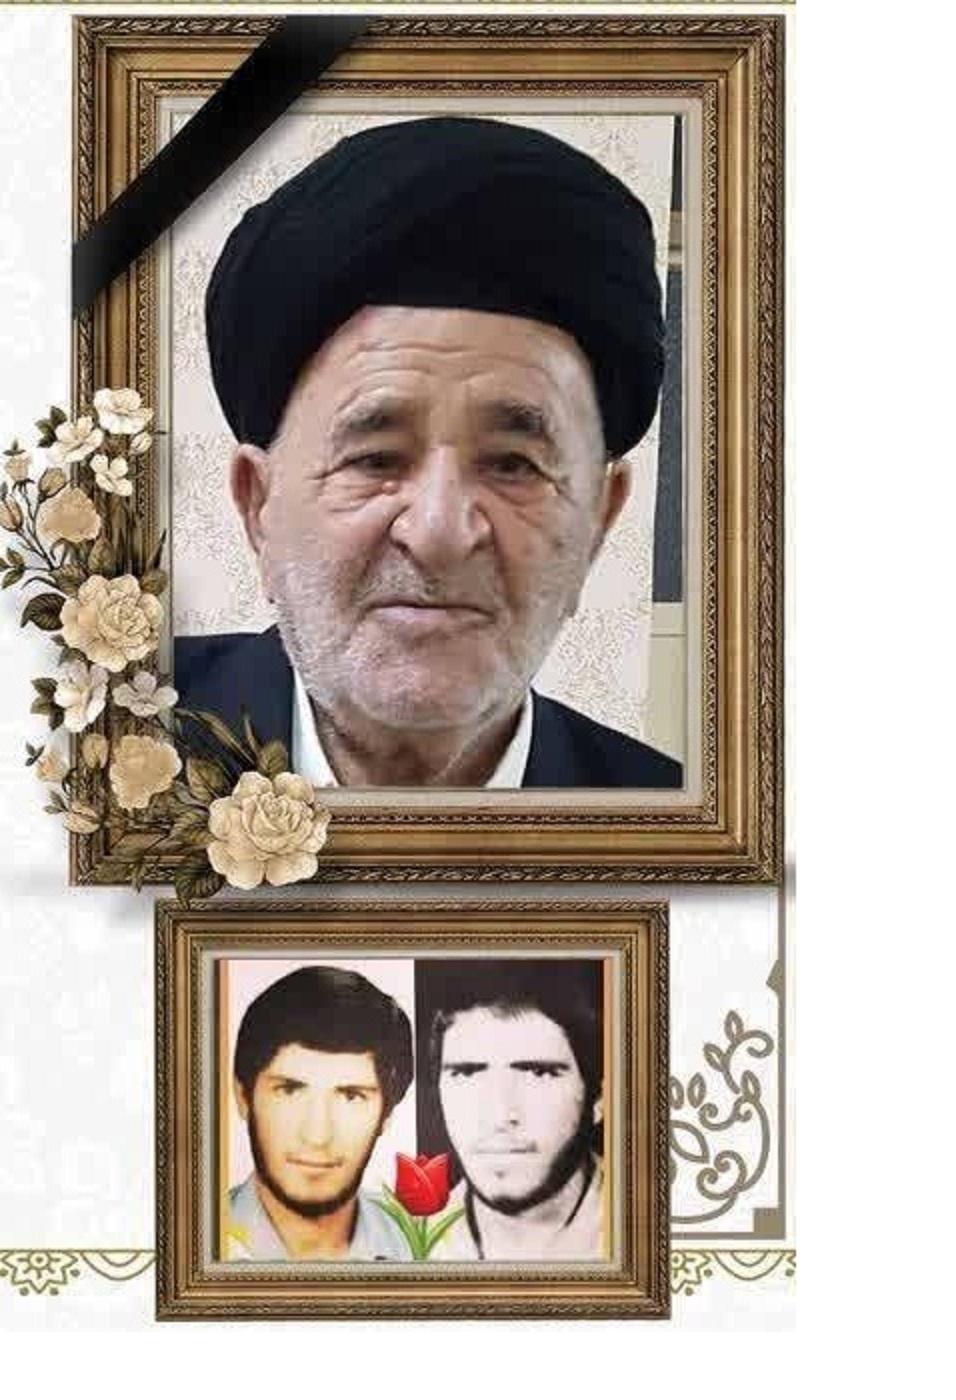 تشییع پدر شهیدان موسوی فرد در اندیمشک | خبرگزاری صدا و سیما